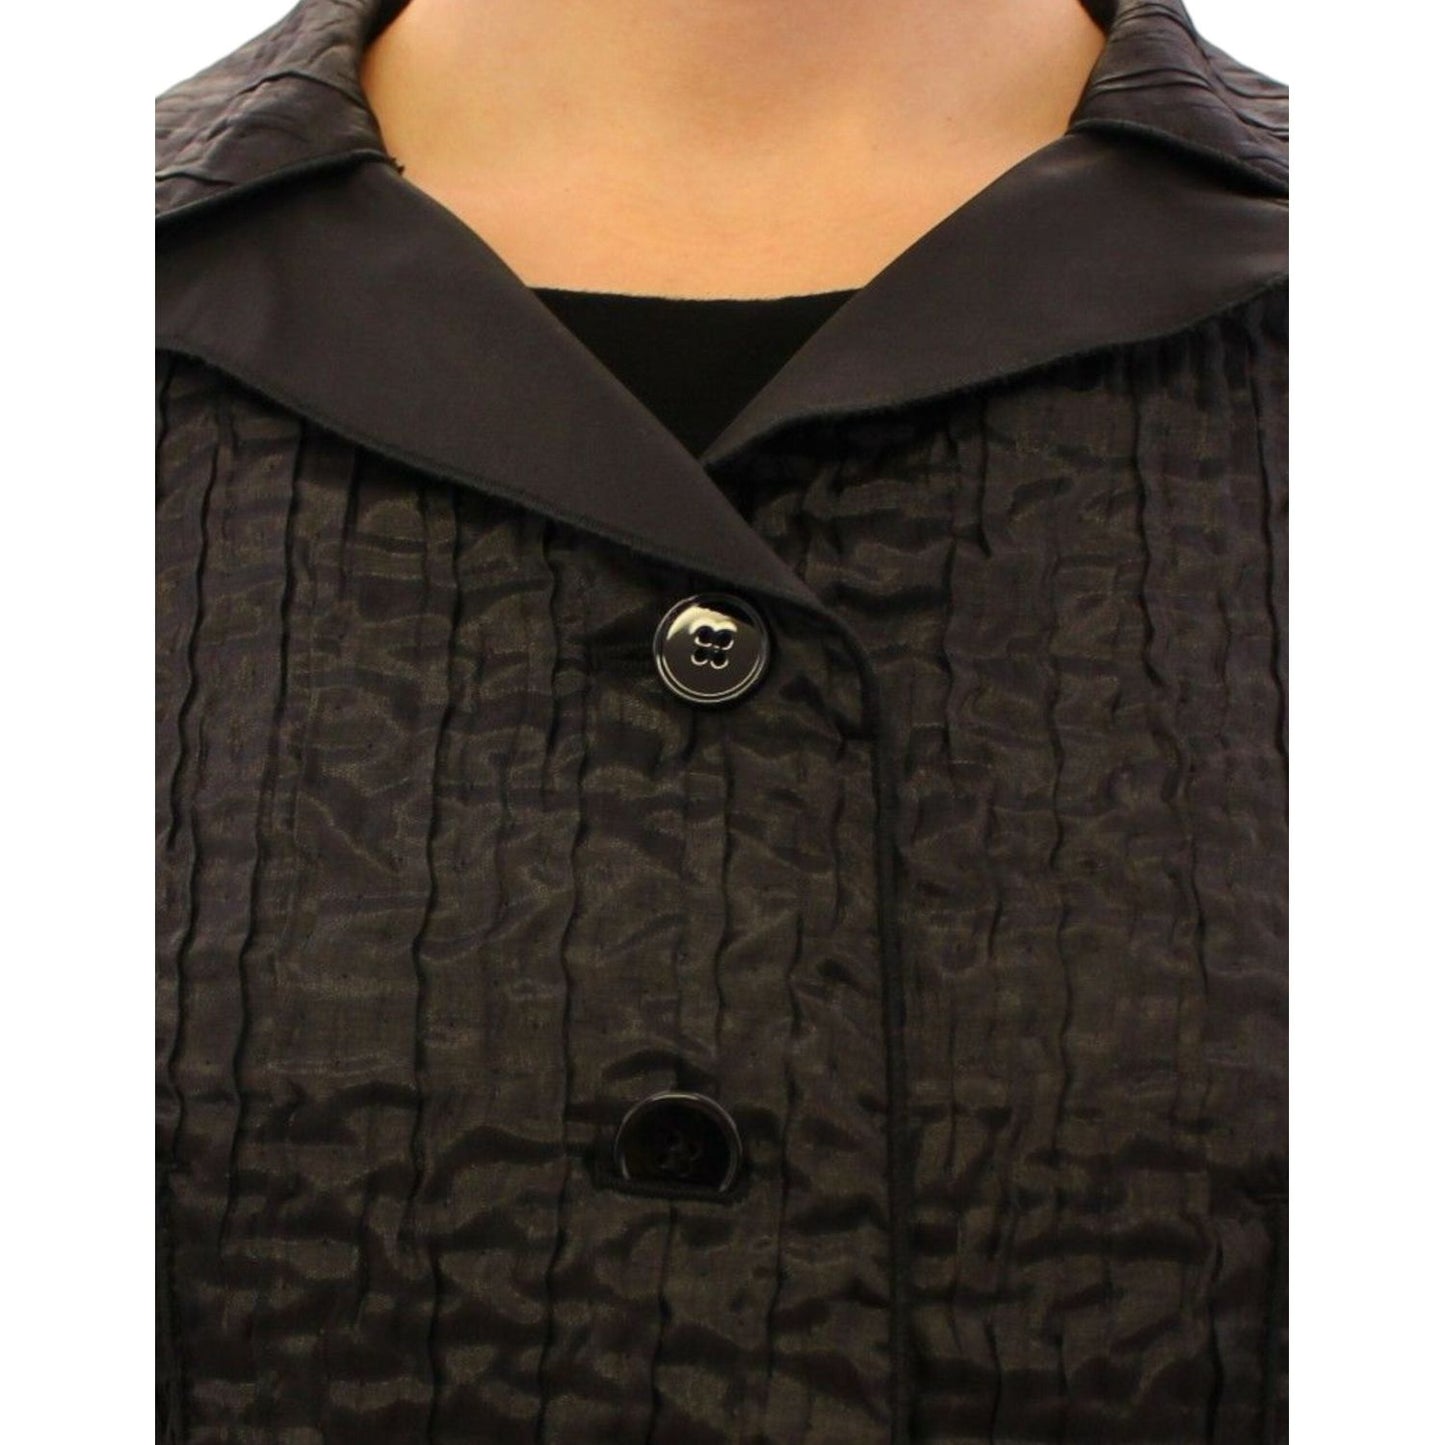 Dolce & Gabbana Elegant Black Bolero Shrug Jacket Coats & Jackets black-short-bolero-shrug-jacket-coat